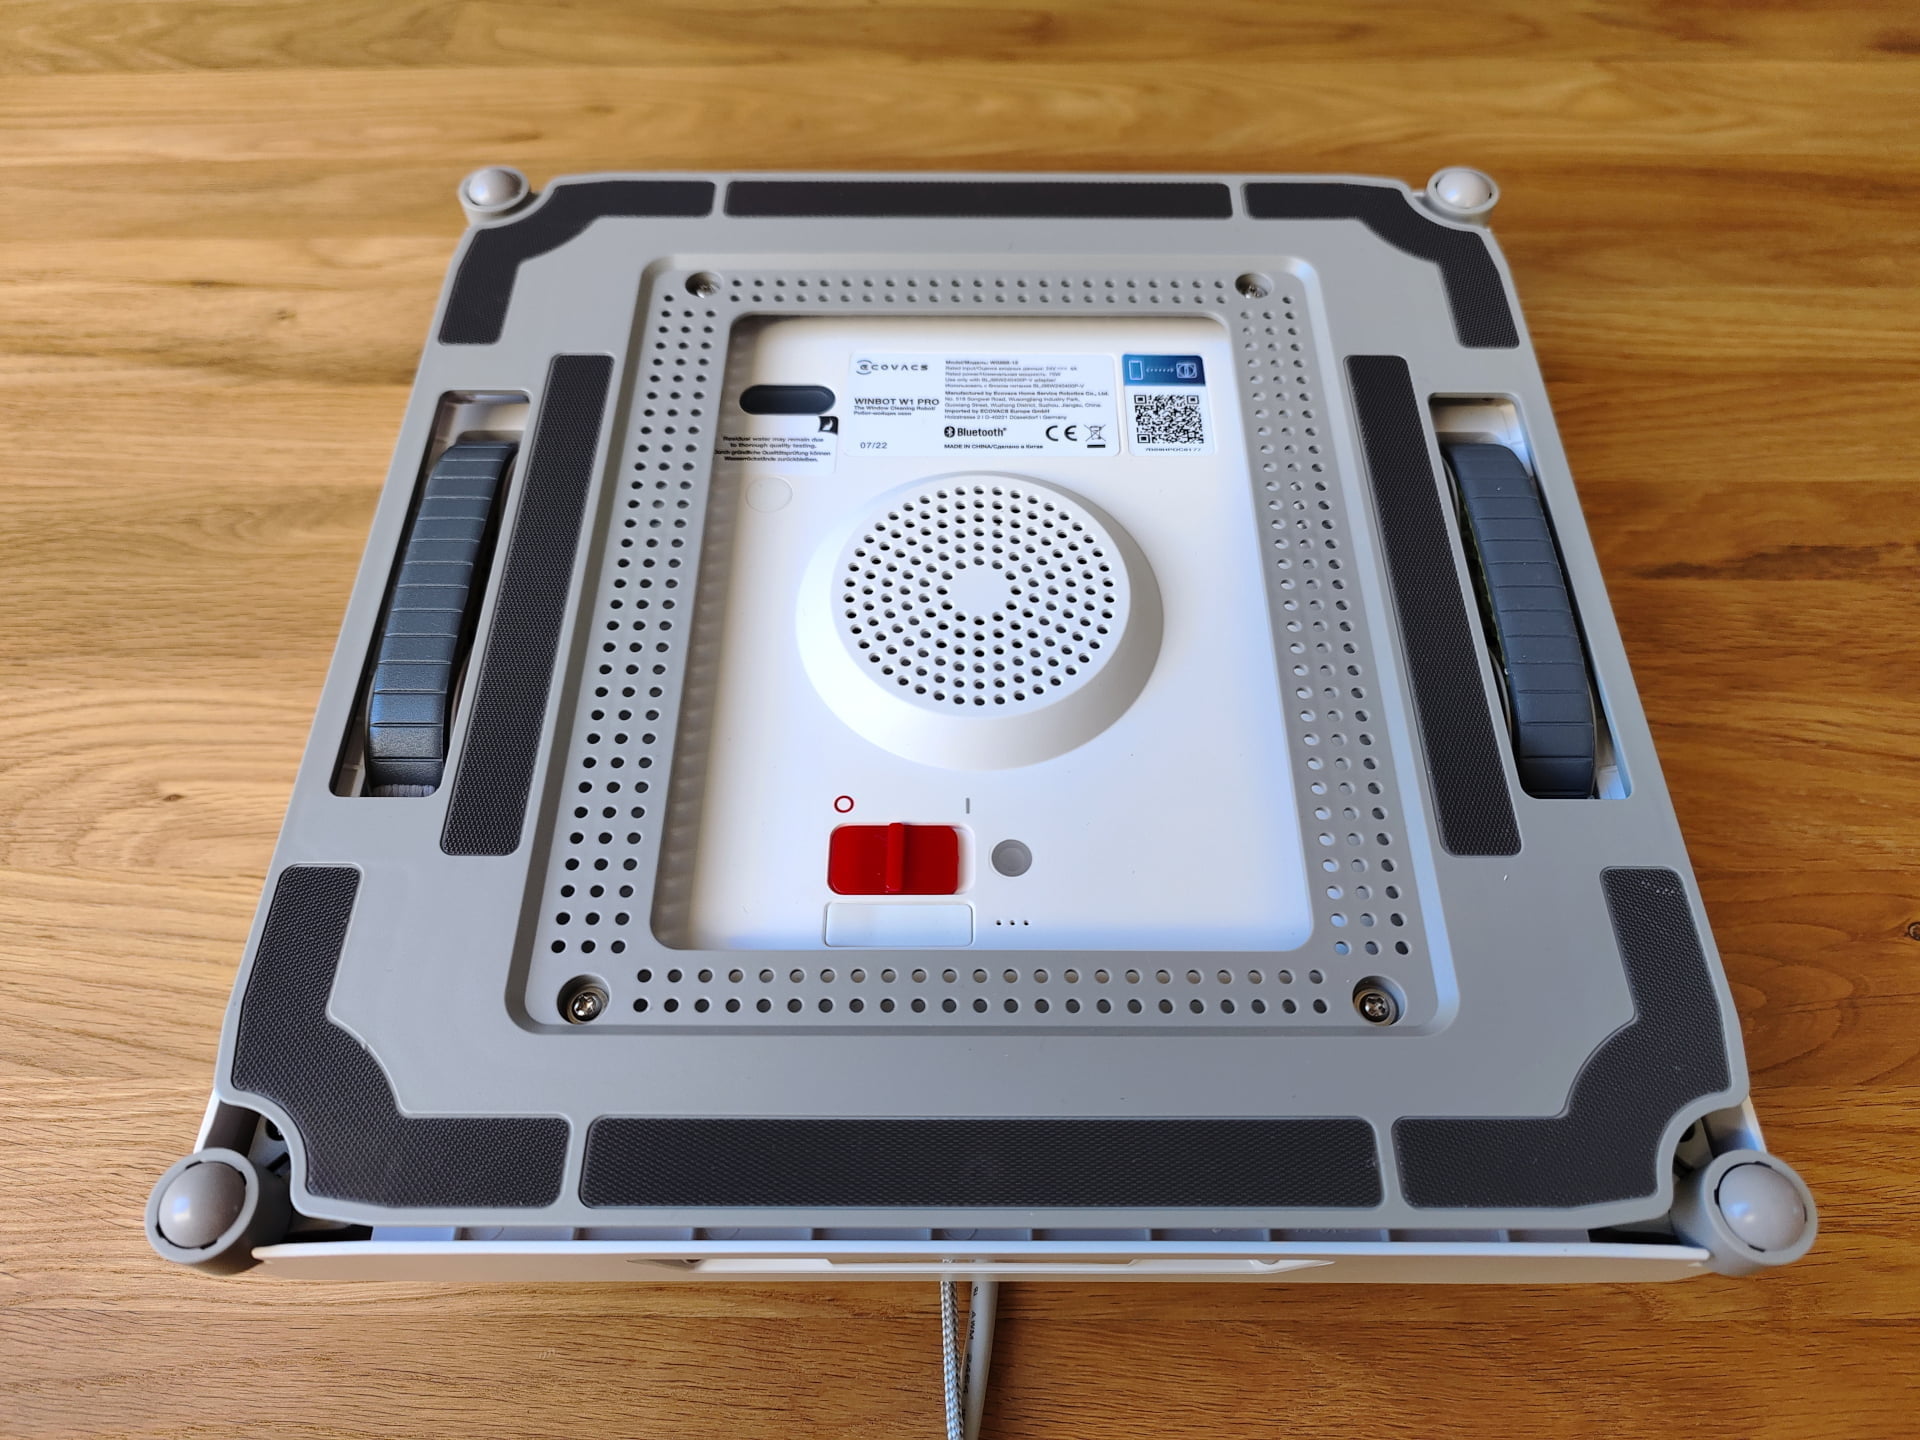 Test de l'Ecovacs Winbot W1 Pro : le robot laveur de vitres chic et choc